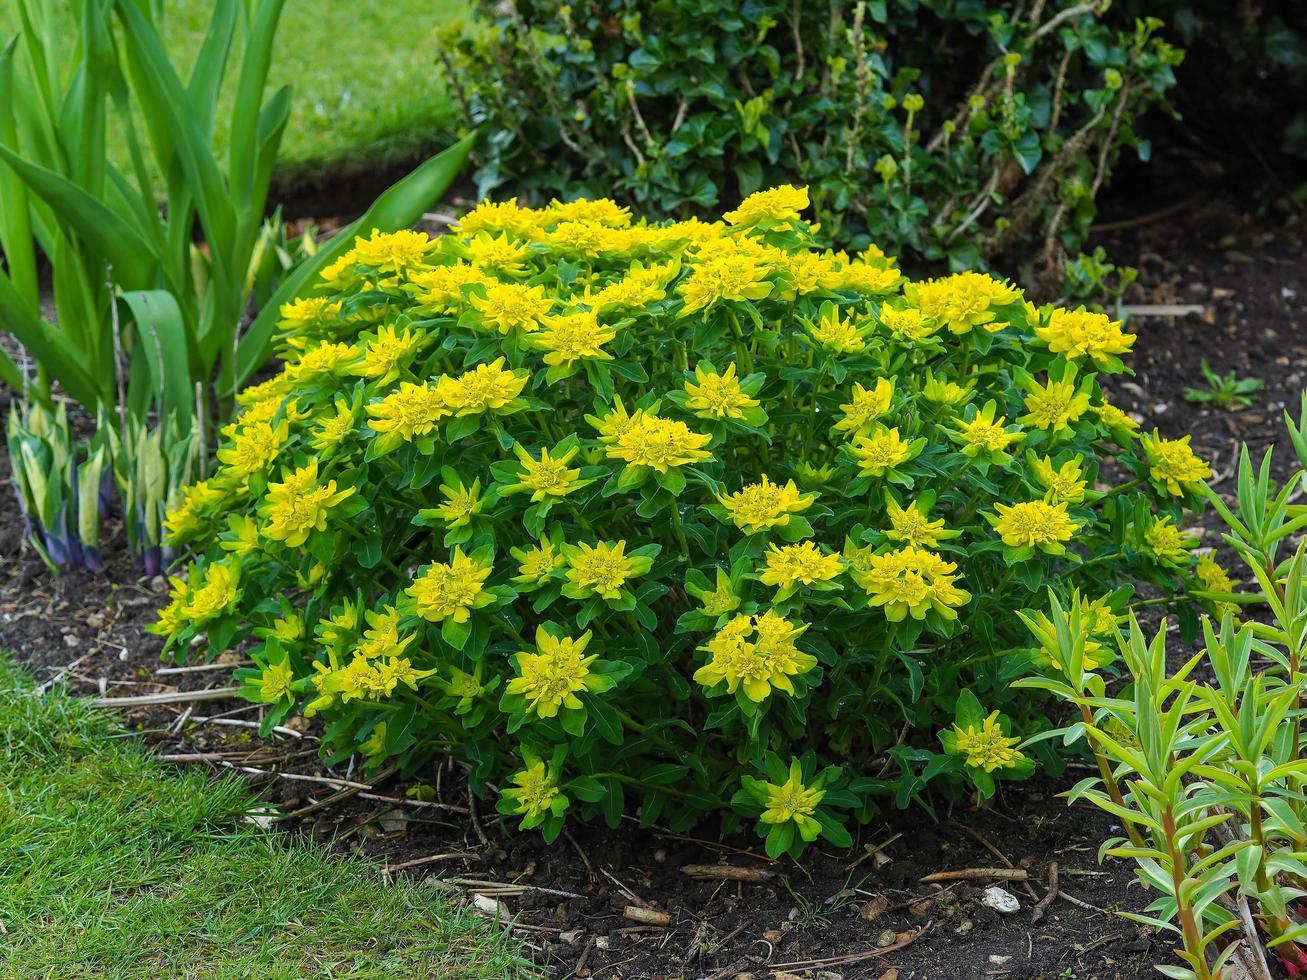 planta euphorbia amarela compacta florescendo em um jardim foto